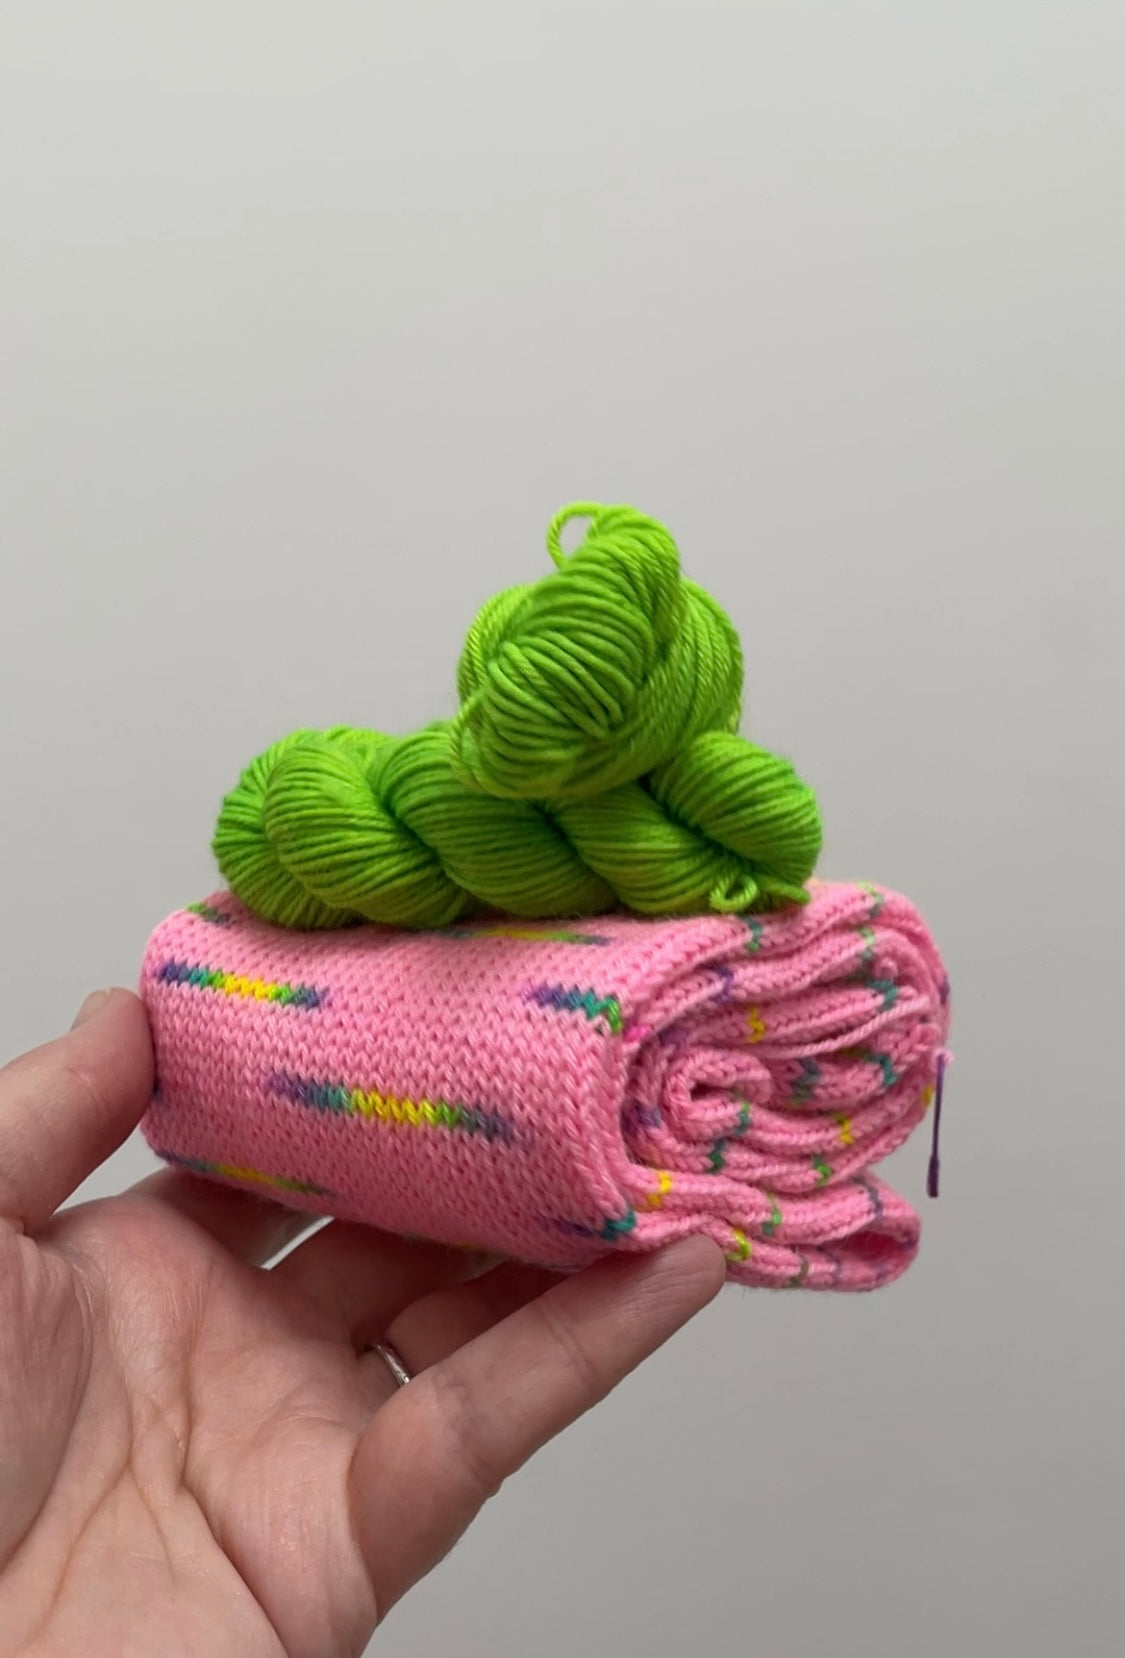 Sox in a box! - Merino nylon - sock snake - contrast mini - 4ply